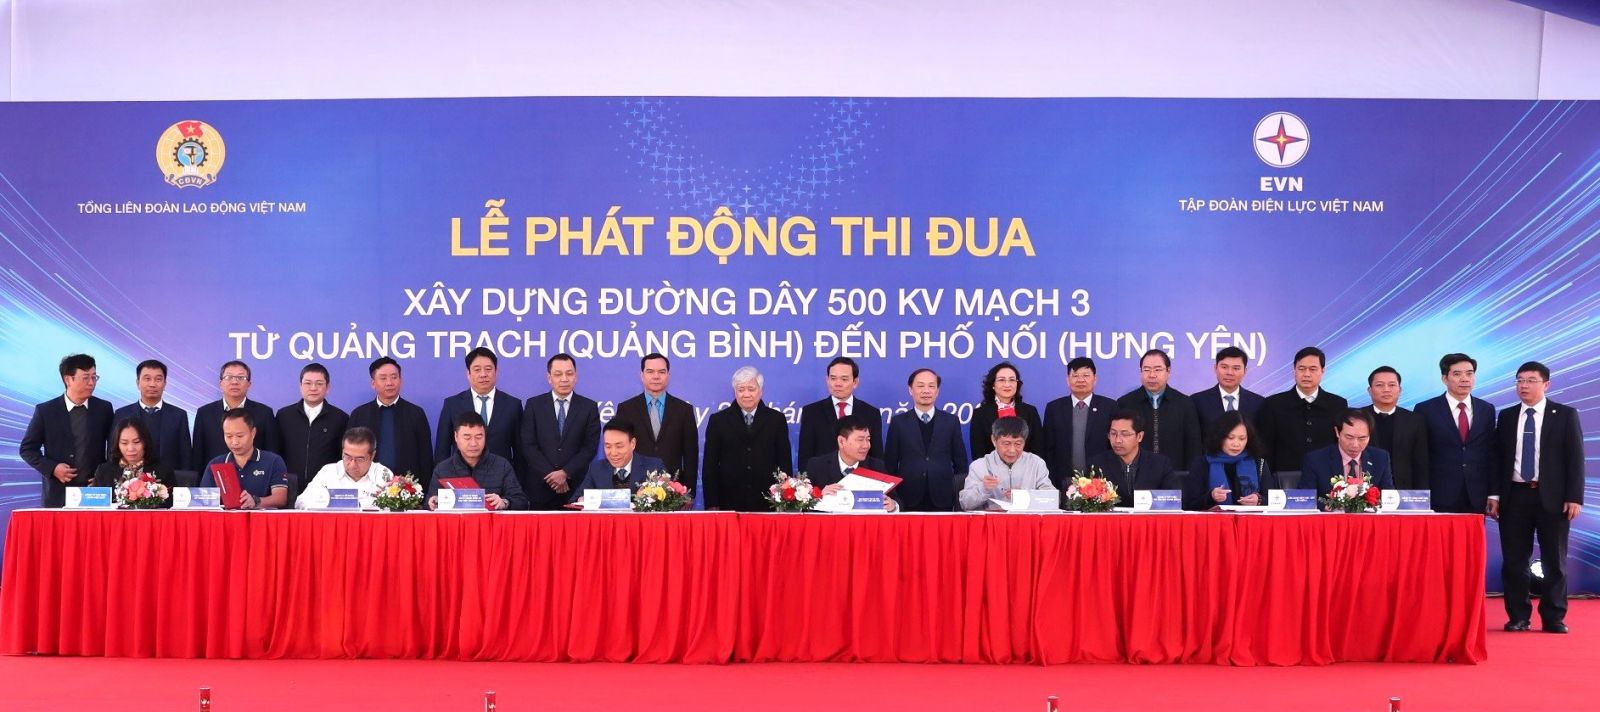 Lãnh đạo Trung ương MTTQ Việt Nam, lãnh đạo Chính phủ, lãnh đạo Tổng liên đoàn Lao động Việt Nam, lãnh đạo các địa phương, EVN, EVNNPT chứng kiến đại diện chủ đầu tư, các nhà thầu cam kết thi đua